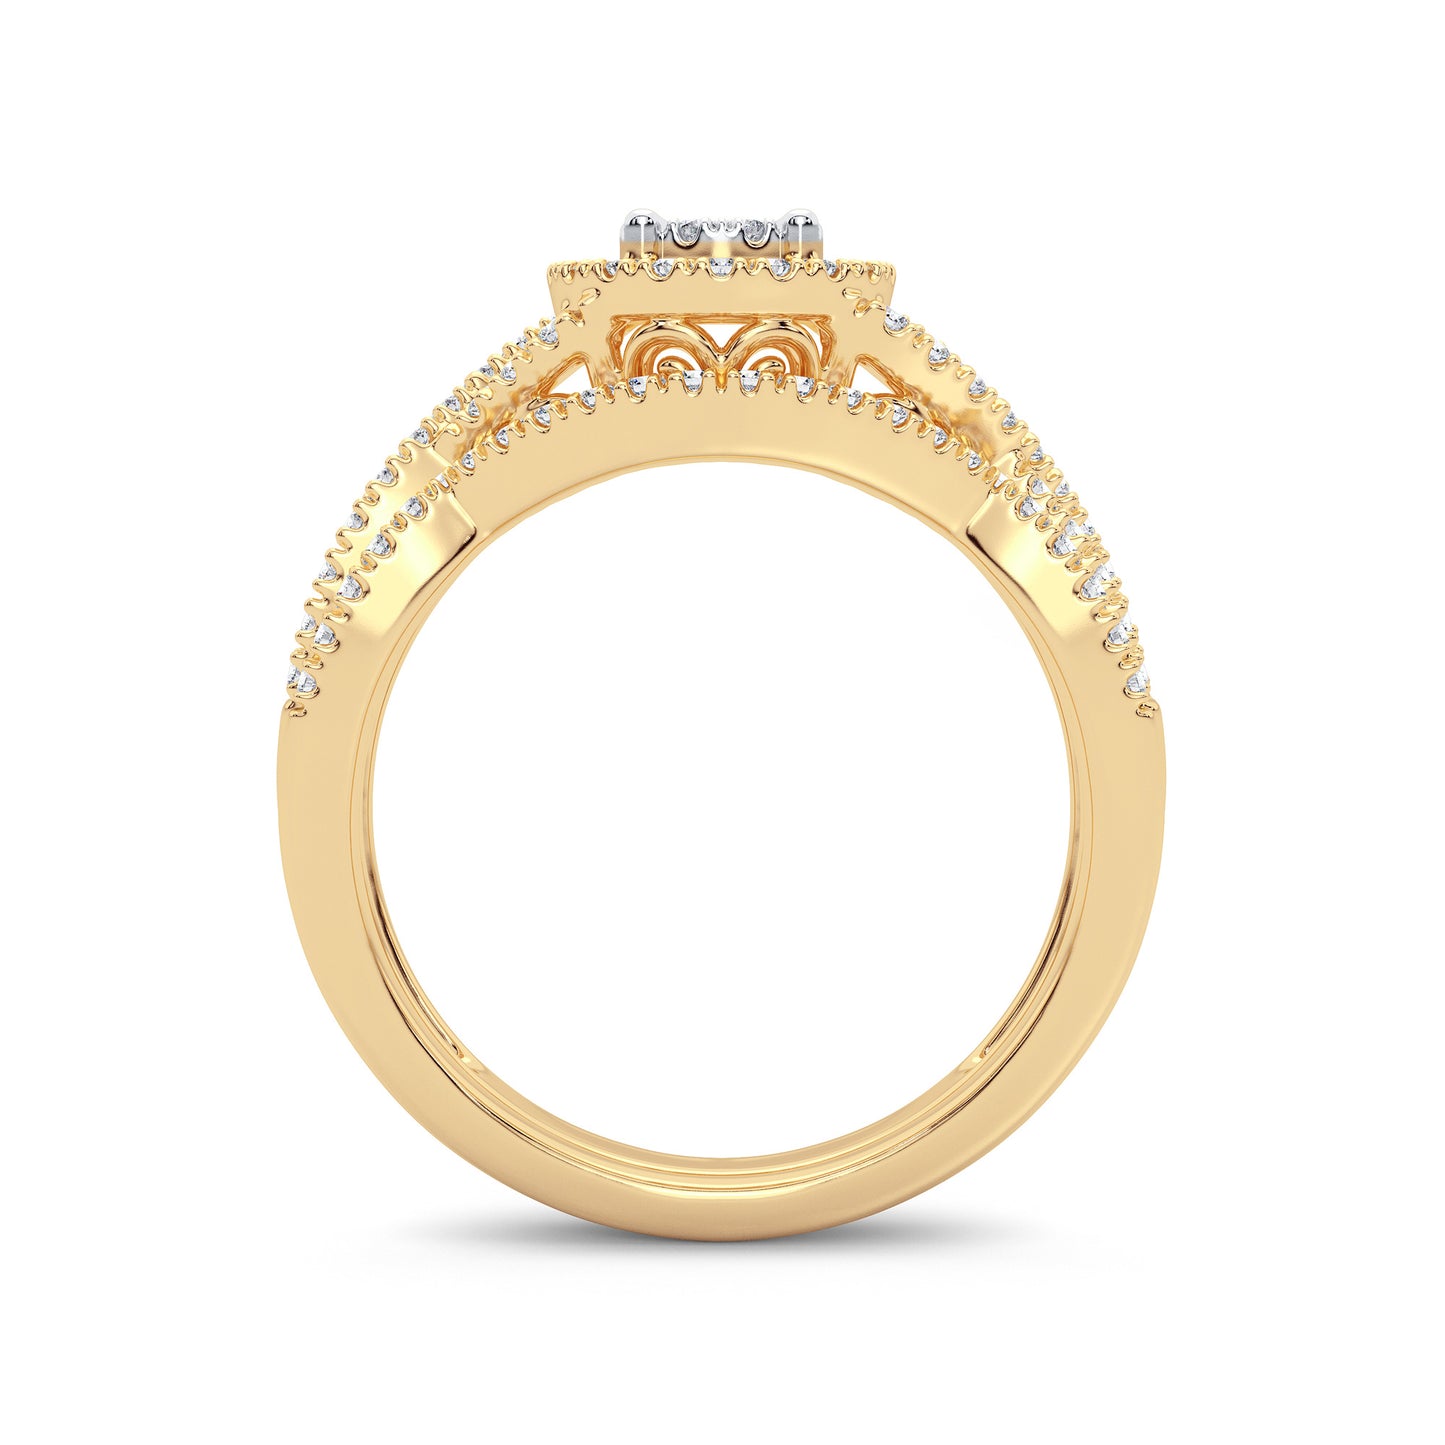 Serenata Sunburst - Conjunto nupcial de oro amarillo de 14 quilates con diamantes redondos de 0,50 quilates